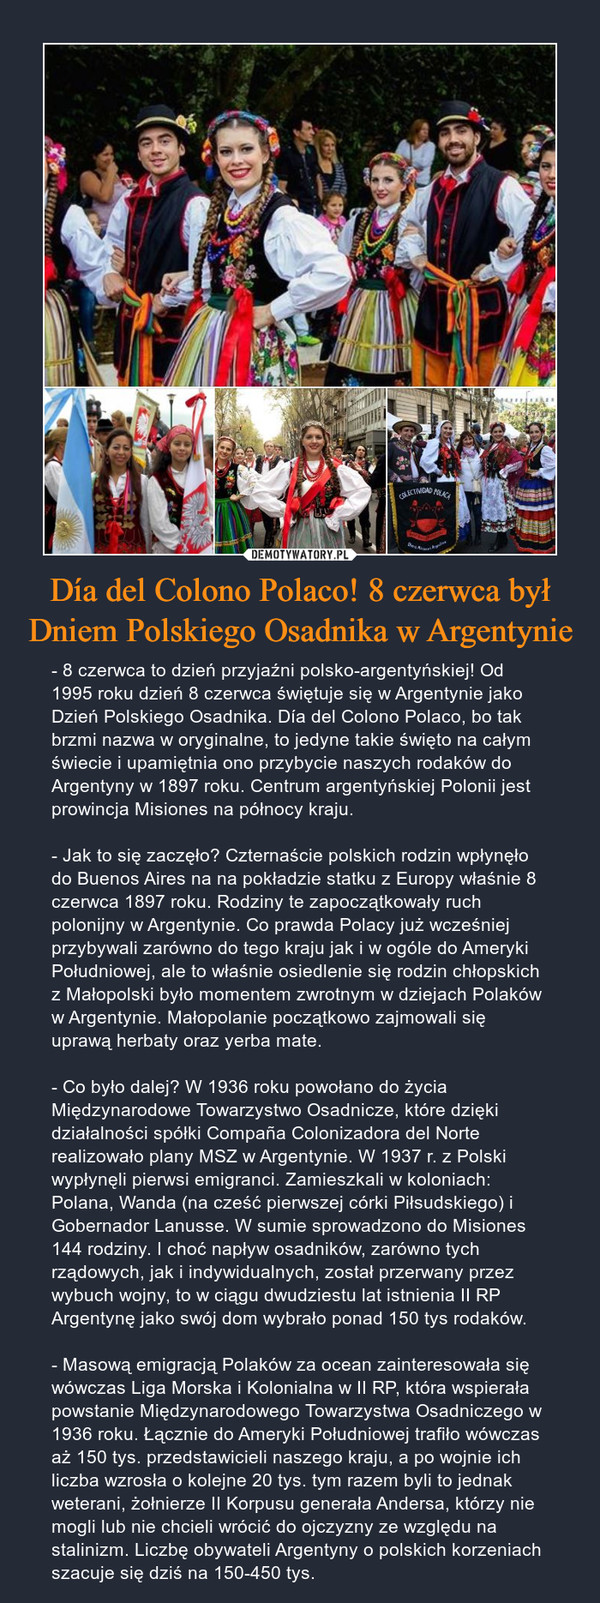 Día del Colono Polaco! 8 czerwca był Dniem Polskiego Osadnika w Argentynie